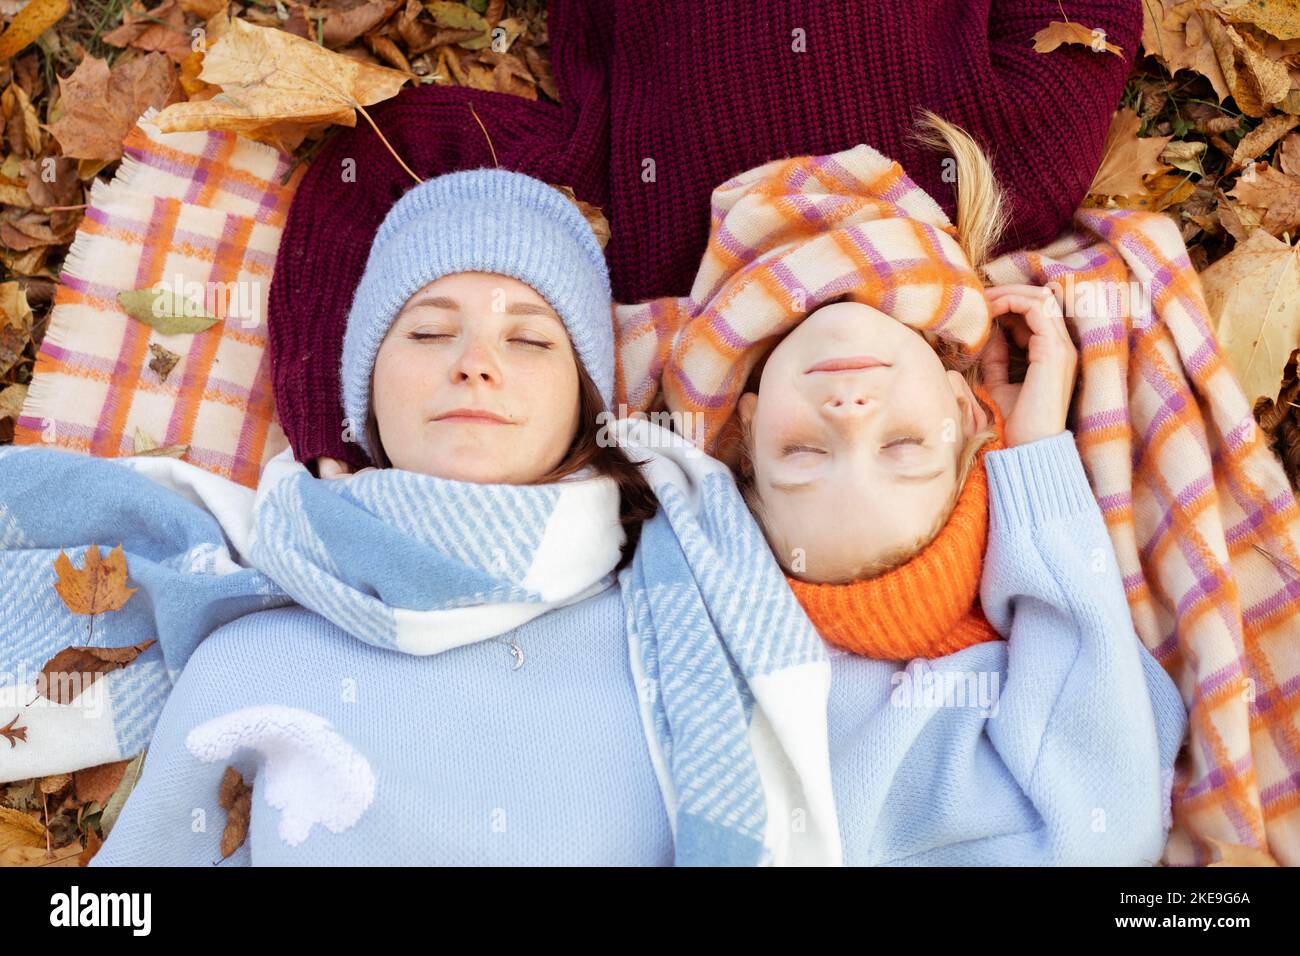 Calme, heureuse jeune mère et petite fille avec des yeux rapprochés dans des tenues chaudes bleu et orange avec des chapeaux couchés sur le feuillage Banque D'Images